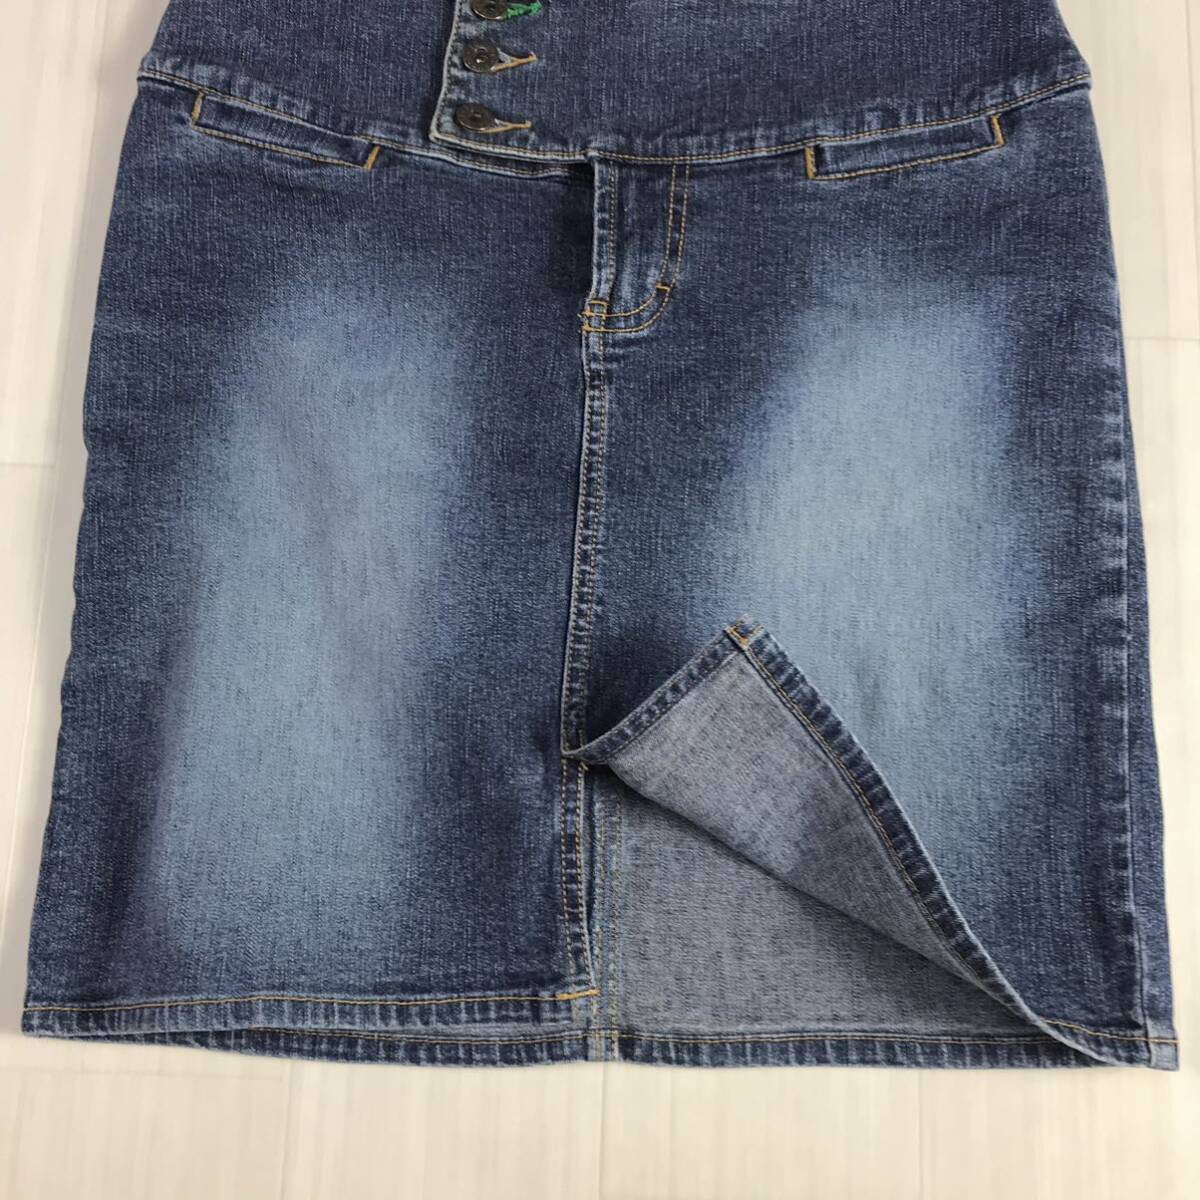 TOMMY JEANS Tommy джинсы Denim юбка мини-юбка 1 индиго голубой шт. форма стрейч материалы печать кнопка флаг бирка передний разрез 